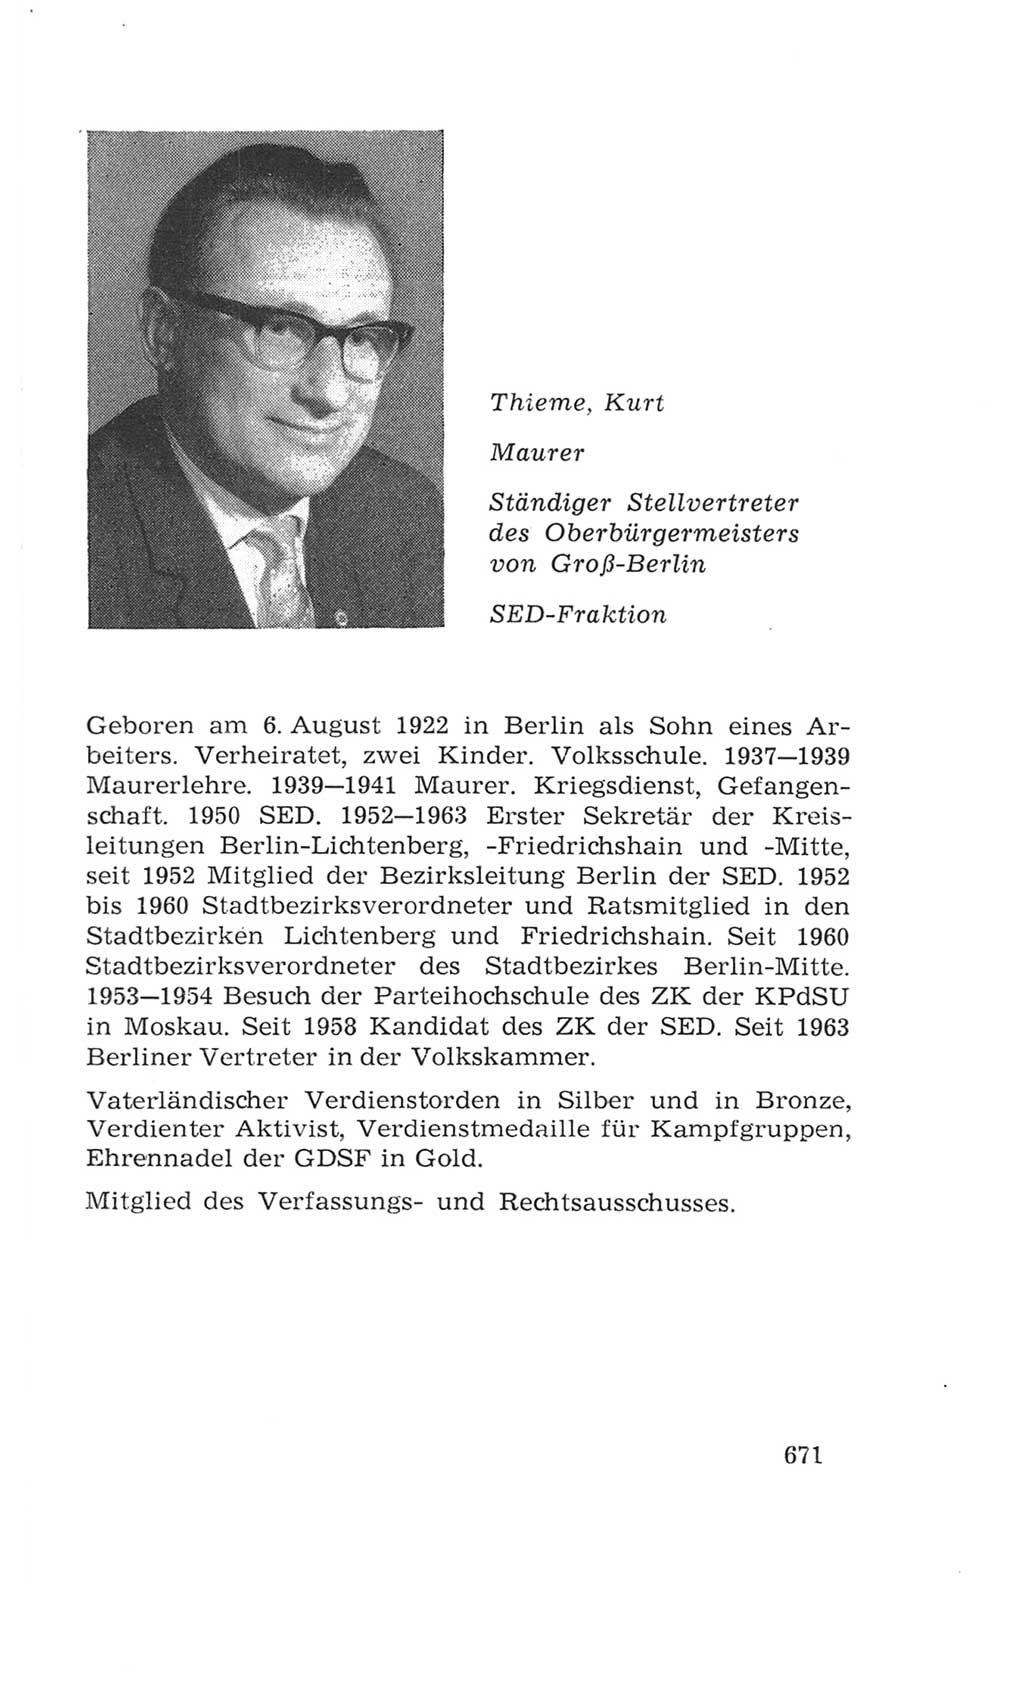 Volkskammer (VK) der Deutschen Demokratischen Republik (DDR), 4. Wahlperiode 1963-1967, Seite 671 (VK. DDR 4. WP. 1963-1967, S. 671)